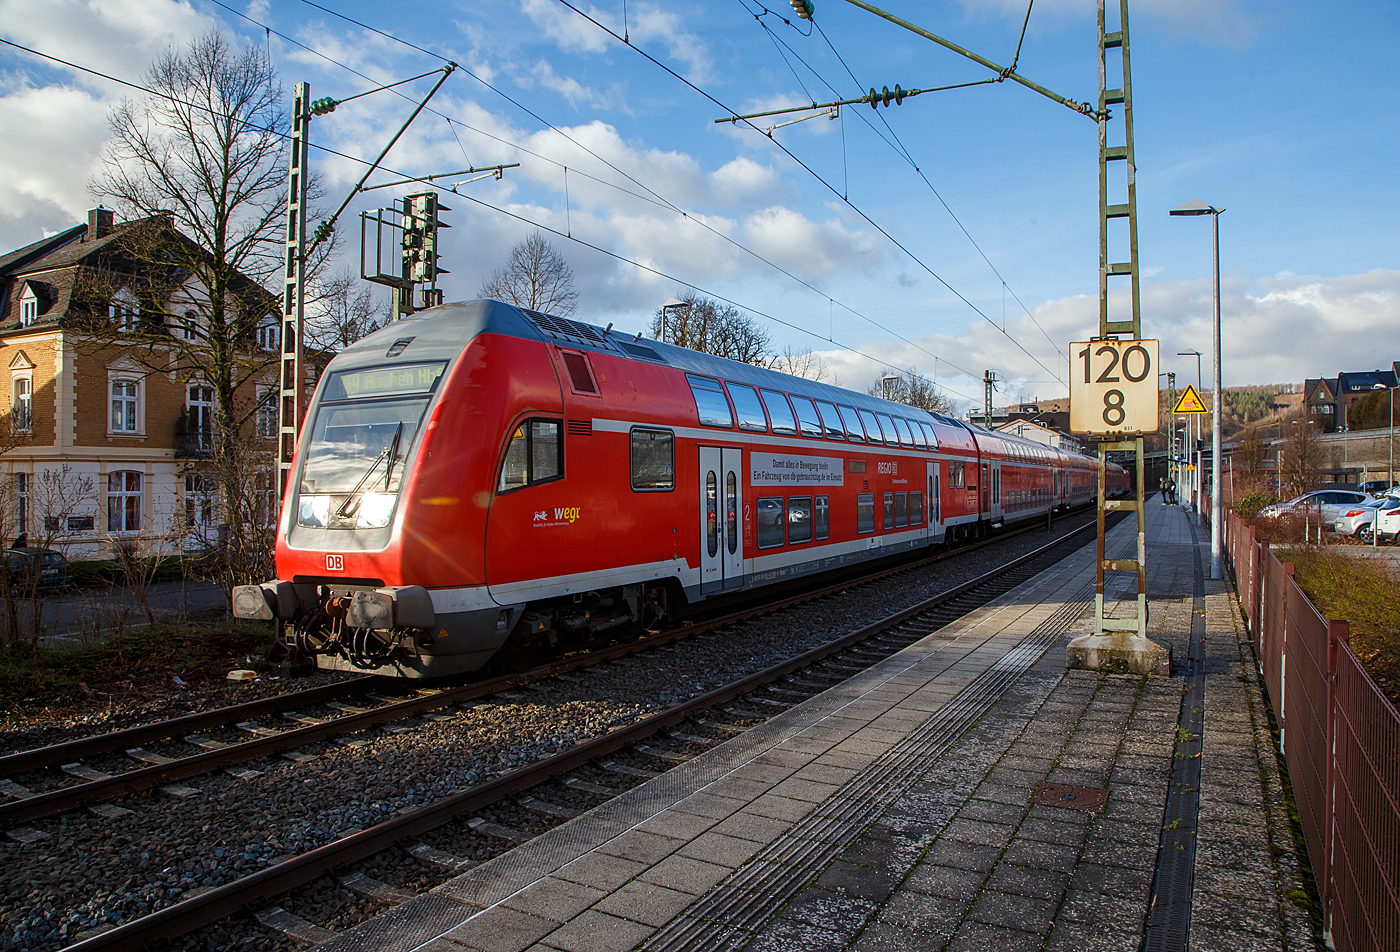 Steuerwagen voraus verlässt der RE 9 rsx - Rhein-Sieg-Express (Siegen – Köln – Aachen) am 17.01.2023 den Bahnhof Kirchen (Sieg). 

Der klimatisierte Doppelstock-Steuerwagen der 2. Klasse (DoSto-Steuerwagen) ist der D-DB 50 80 86 – 81 058-9 DBpbzfa 766.3 „Schwarzwaldbahn“  der DB Regio Baden-Württemberg, er wird auch als Gebrauchtwagen angeboten, daher trägt er die Werbung: Damit alles in „Bewegung bleibt / Ein Fahrzeug von db-gebrauchtzug.de im Einsatz“. Wobei der Steuerwagen gar nicht so alt ist, er wurde 2006 von Bombardier im Werk Görlitz gebaut.

Die für die „Schwarzwaldbahn“ beschafften Doppelstockwagen verfügen allesamt über eine Schweizzulassung, jedoch nicht über die entsprechende Schweizer Zugsicherung im Steuerwagen. 

TECHNISCHE DATEN:
Hersteller: Bombardier Werk Görlitz, ex Deutsche Waggonbau AG (DWA)
Spurweite: 1.435 mm
Länge über Puffer: 27.270 mm
Wagenkastenlänge: 26.660 mm
Wagenkastenbreite: 2.784 mm
Höhe über Schienenoberkante: 4.631 mm
Drehzapfenabstand: 20.000 mm
Achsstand im Drehgestell: 2.500 mm
Drehgestellbauart: Görlitz VIII
Leergewicht: 53 t
Höchstgeschwindigkeit: 160 km/h
Bremsbauart: KE-PR-A-Mg-mZ (D)
Sitzplätze: 100 (2. Klasse) und 2 Rollstuhlplätze
Toiletten: 1, behindertengerecht, geschlossenes System
Bemerkungen: 1 Mehrzweckabteil, 1Dienstraum:
Zulassungen für: Deutschland und die Schweiz, uneingeschränkt dieselloktauglich

Schublok war die 146 003-9 (91 80 6146 003-9 D-DB) der DB Regio NRW.